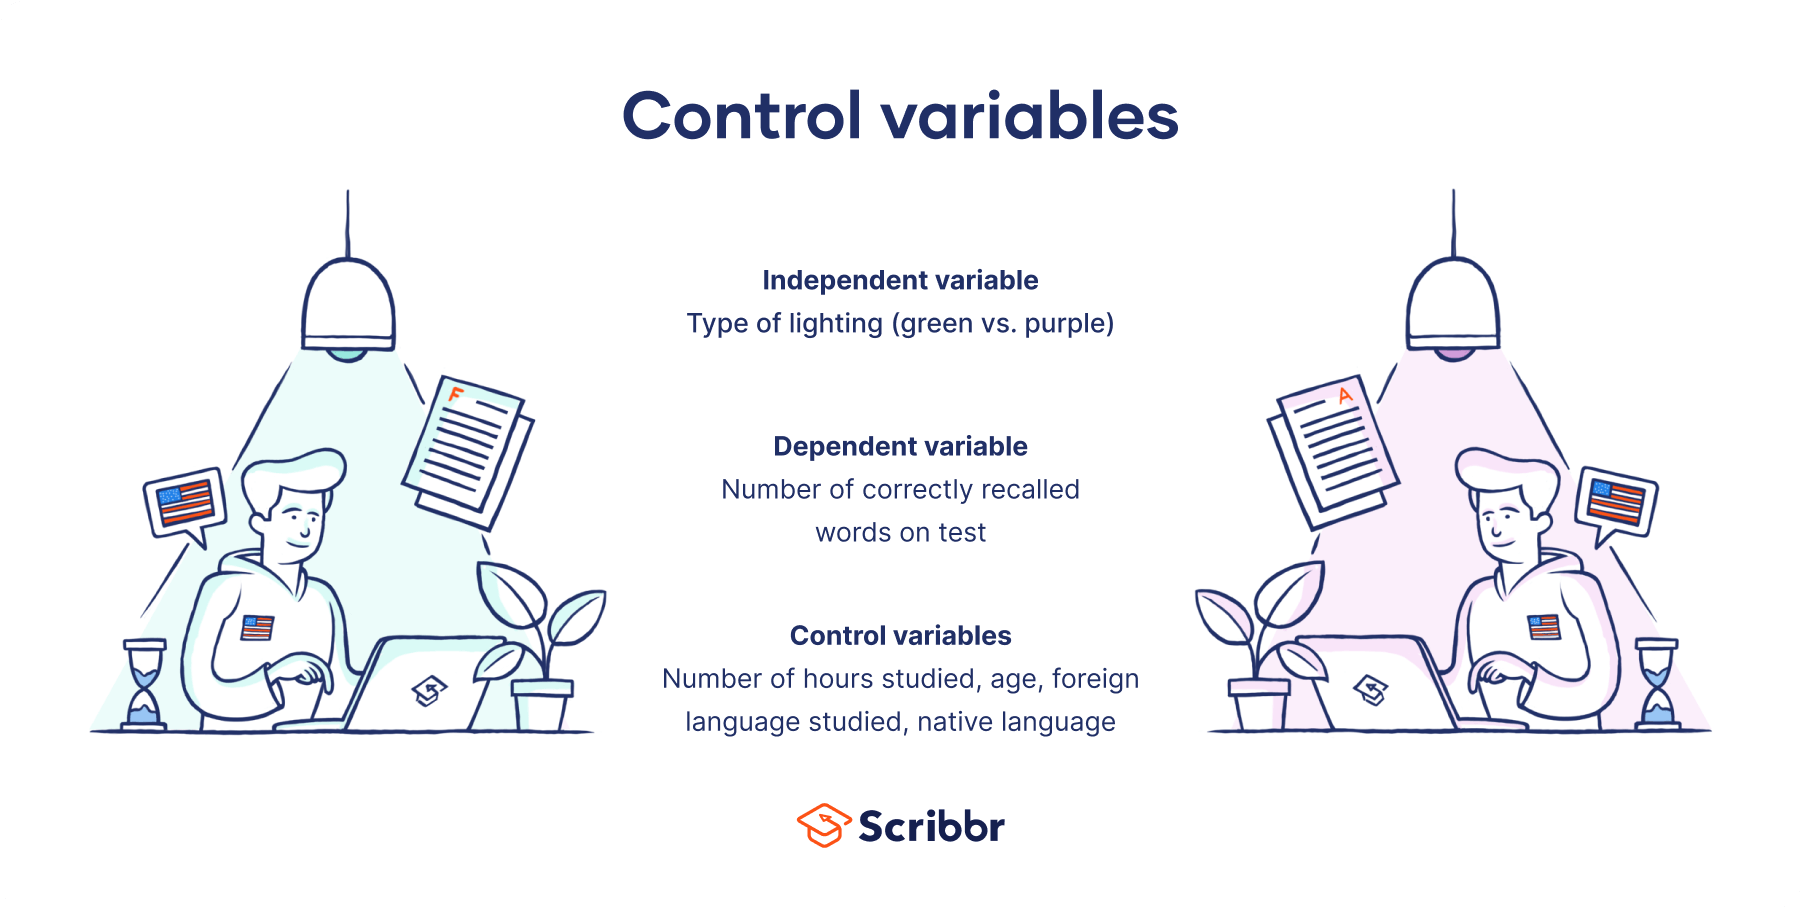 Control variables